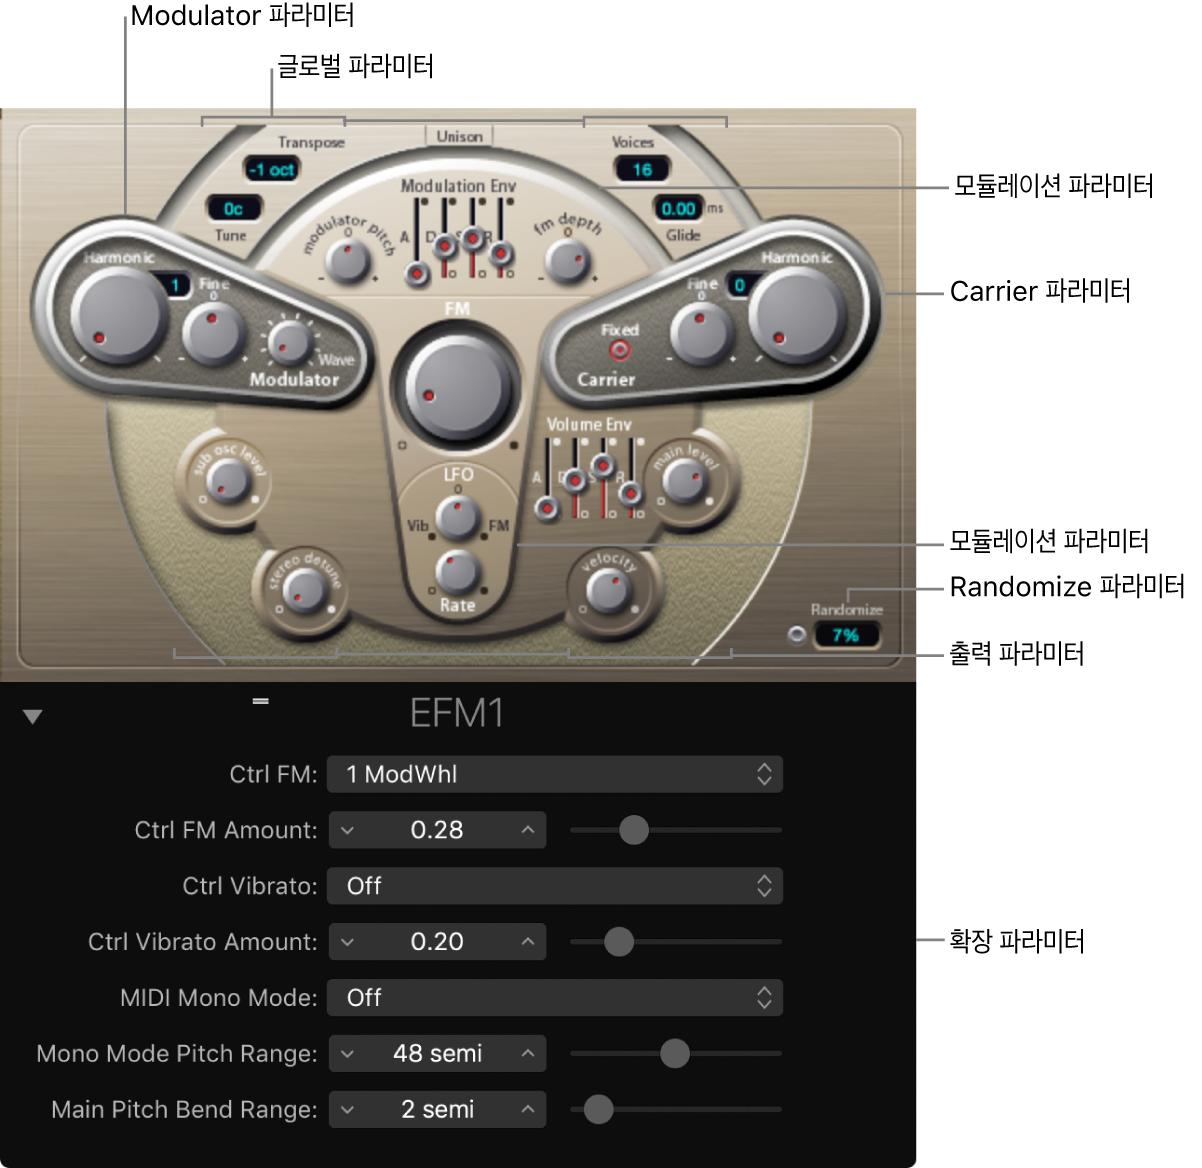 그림. 메인 인터페이스 영역을 보여주는 EFM1 윈도우.